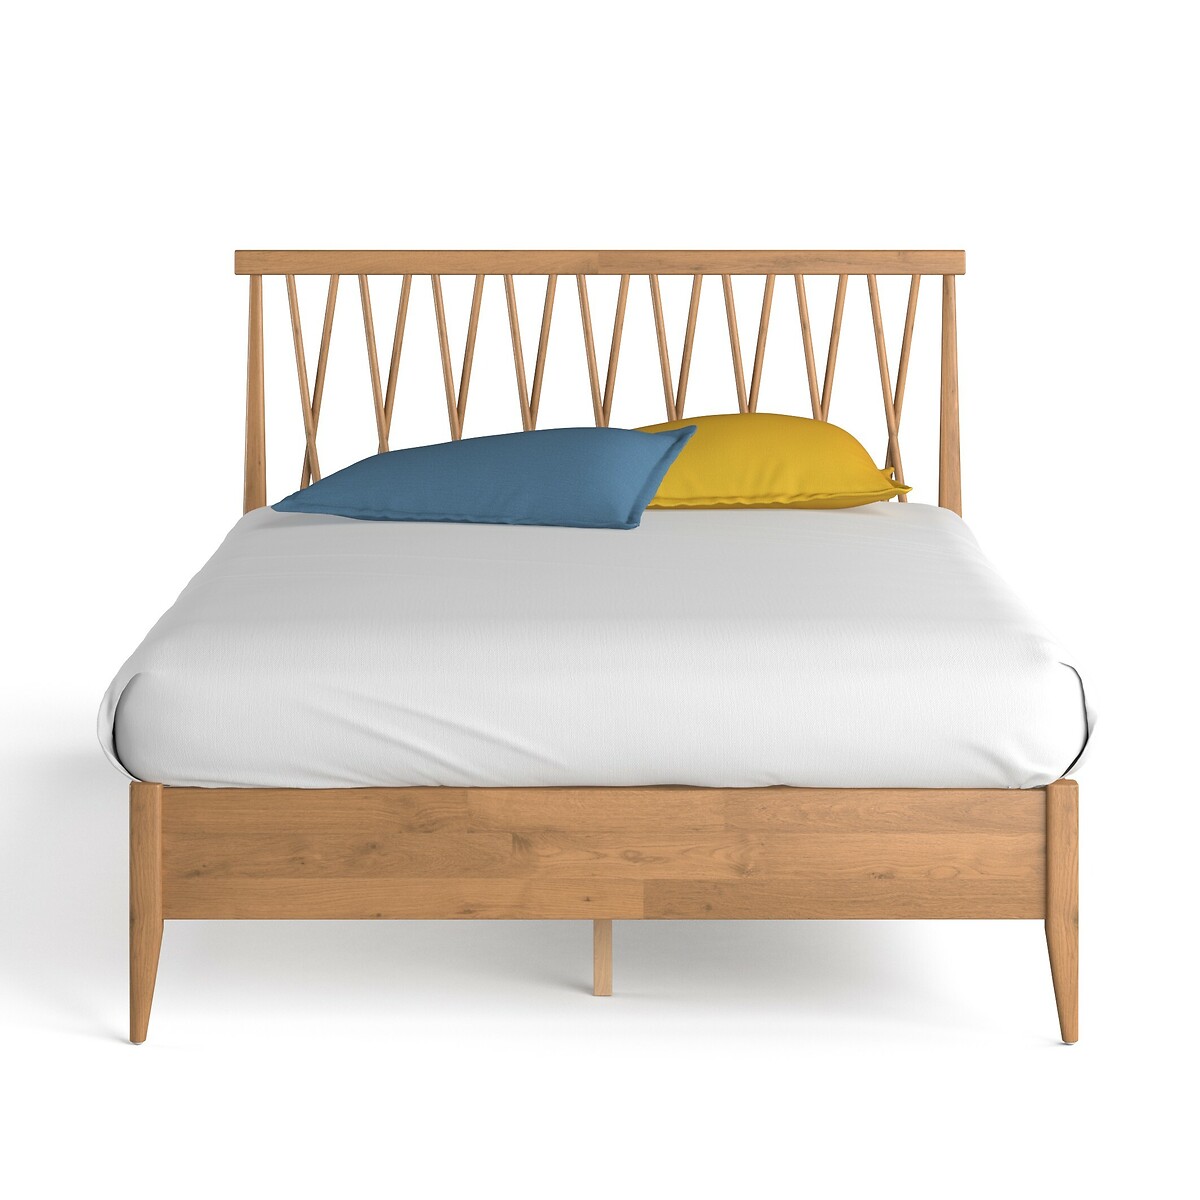 Кровать LaRedoute основание Quilda 180 x 200 см каштановый, размер 180 x 200 см